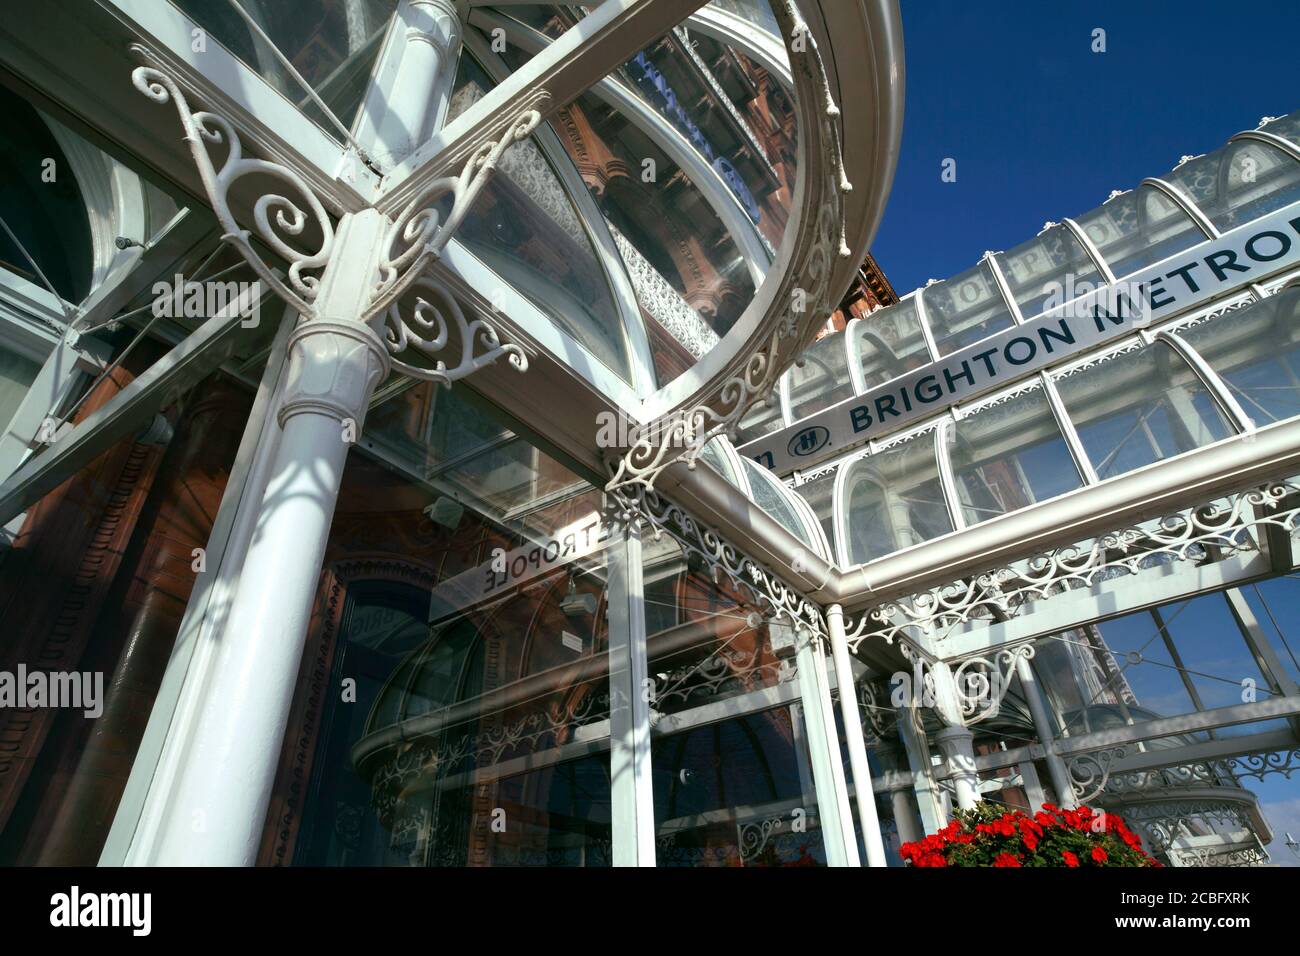 Des ferronnages richement décorés autour de l'entrée principale de l'hôtel Metropole, Kings Road, Brighton. Banque D'Images